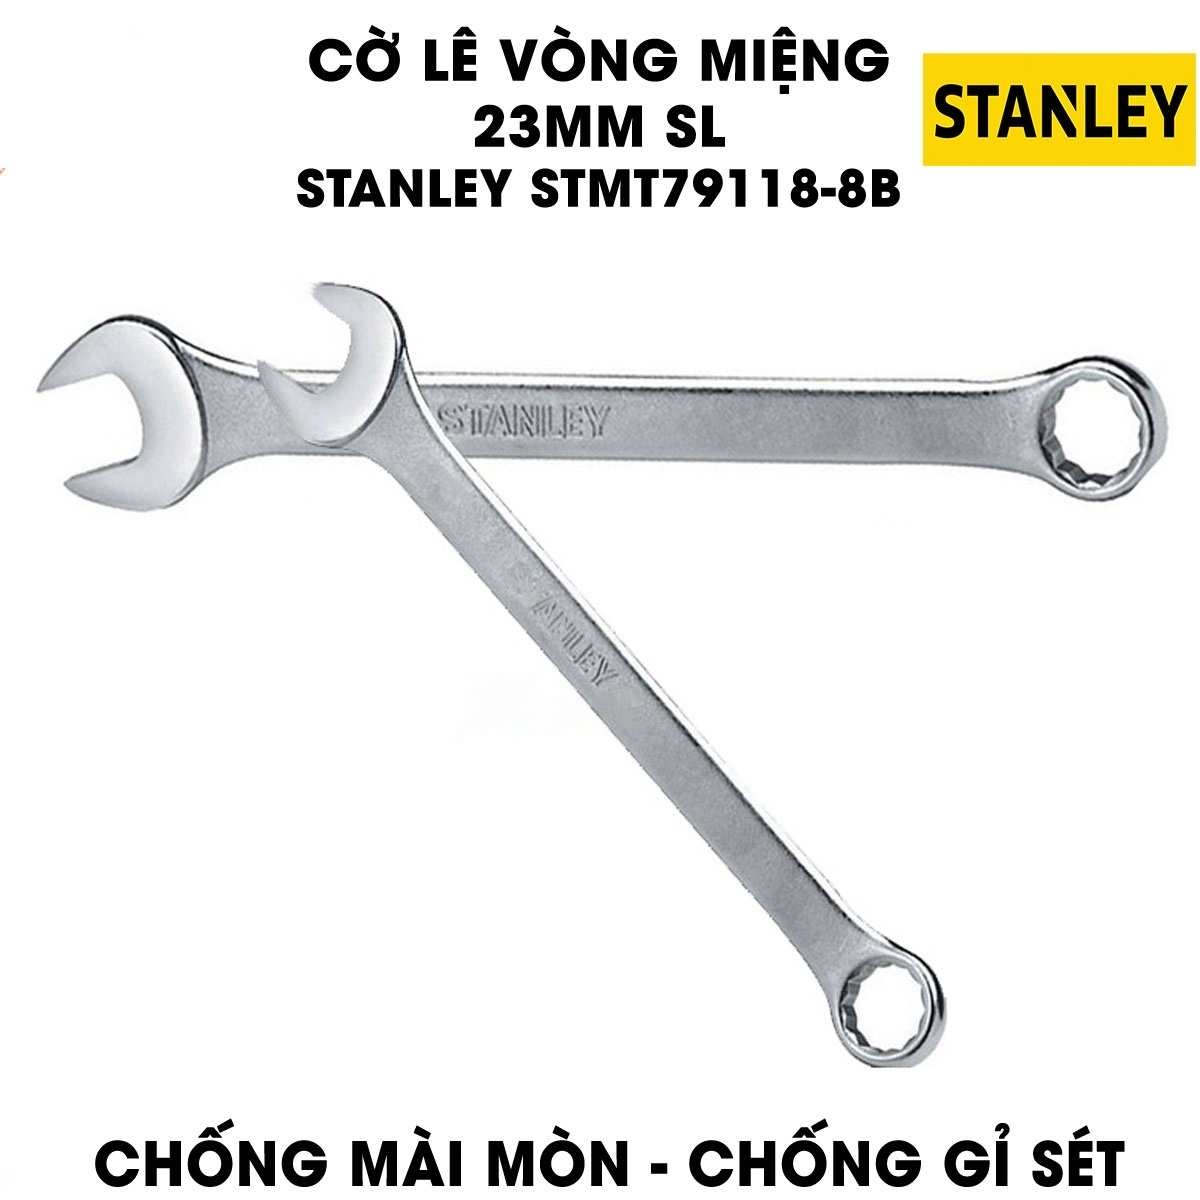 Hình ảnh 4 của mặt hàng Cờ lê vòng miệng 19mm SL Stanley STMT79114-8B